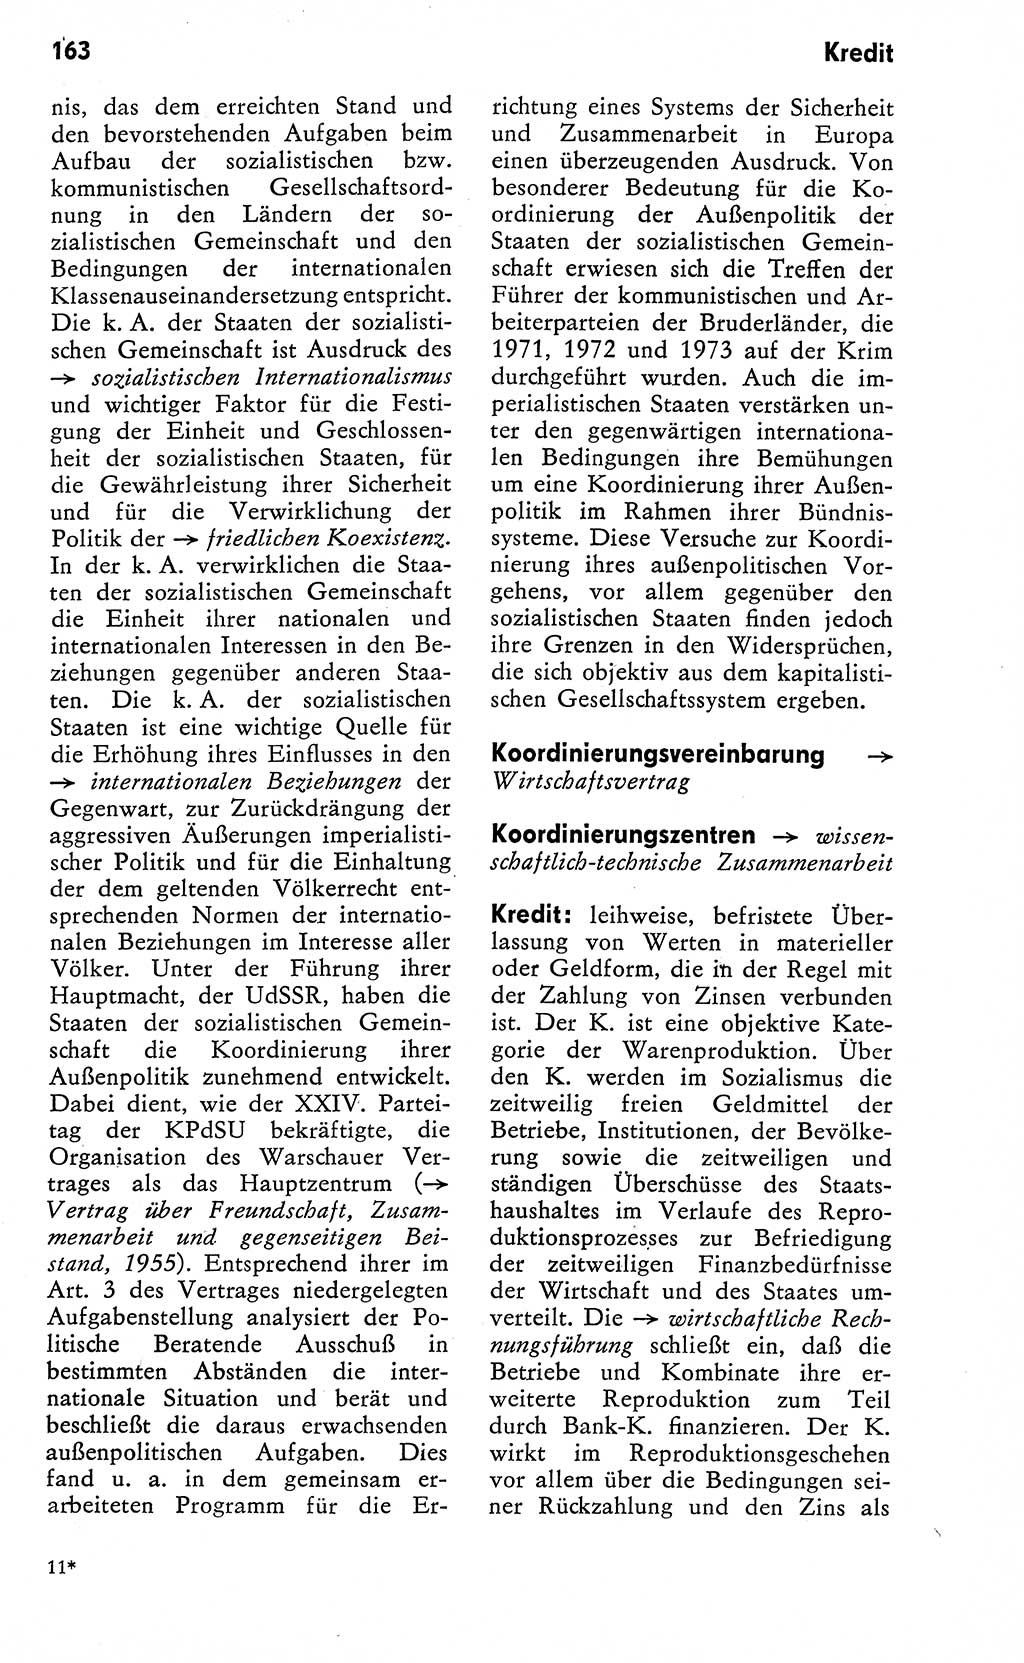 Wörterbuch zum sozialistischen Staat [Deutsche Demokratische Republik (DDR)] 1974, Seite 163 (Wb. soz. St. DDR 1974, S. 163)